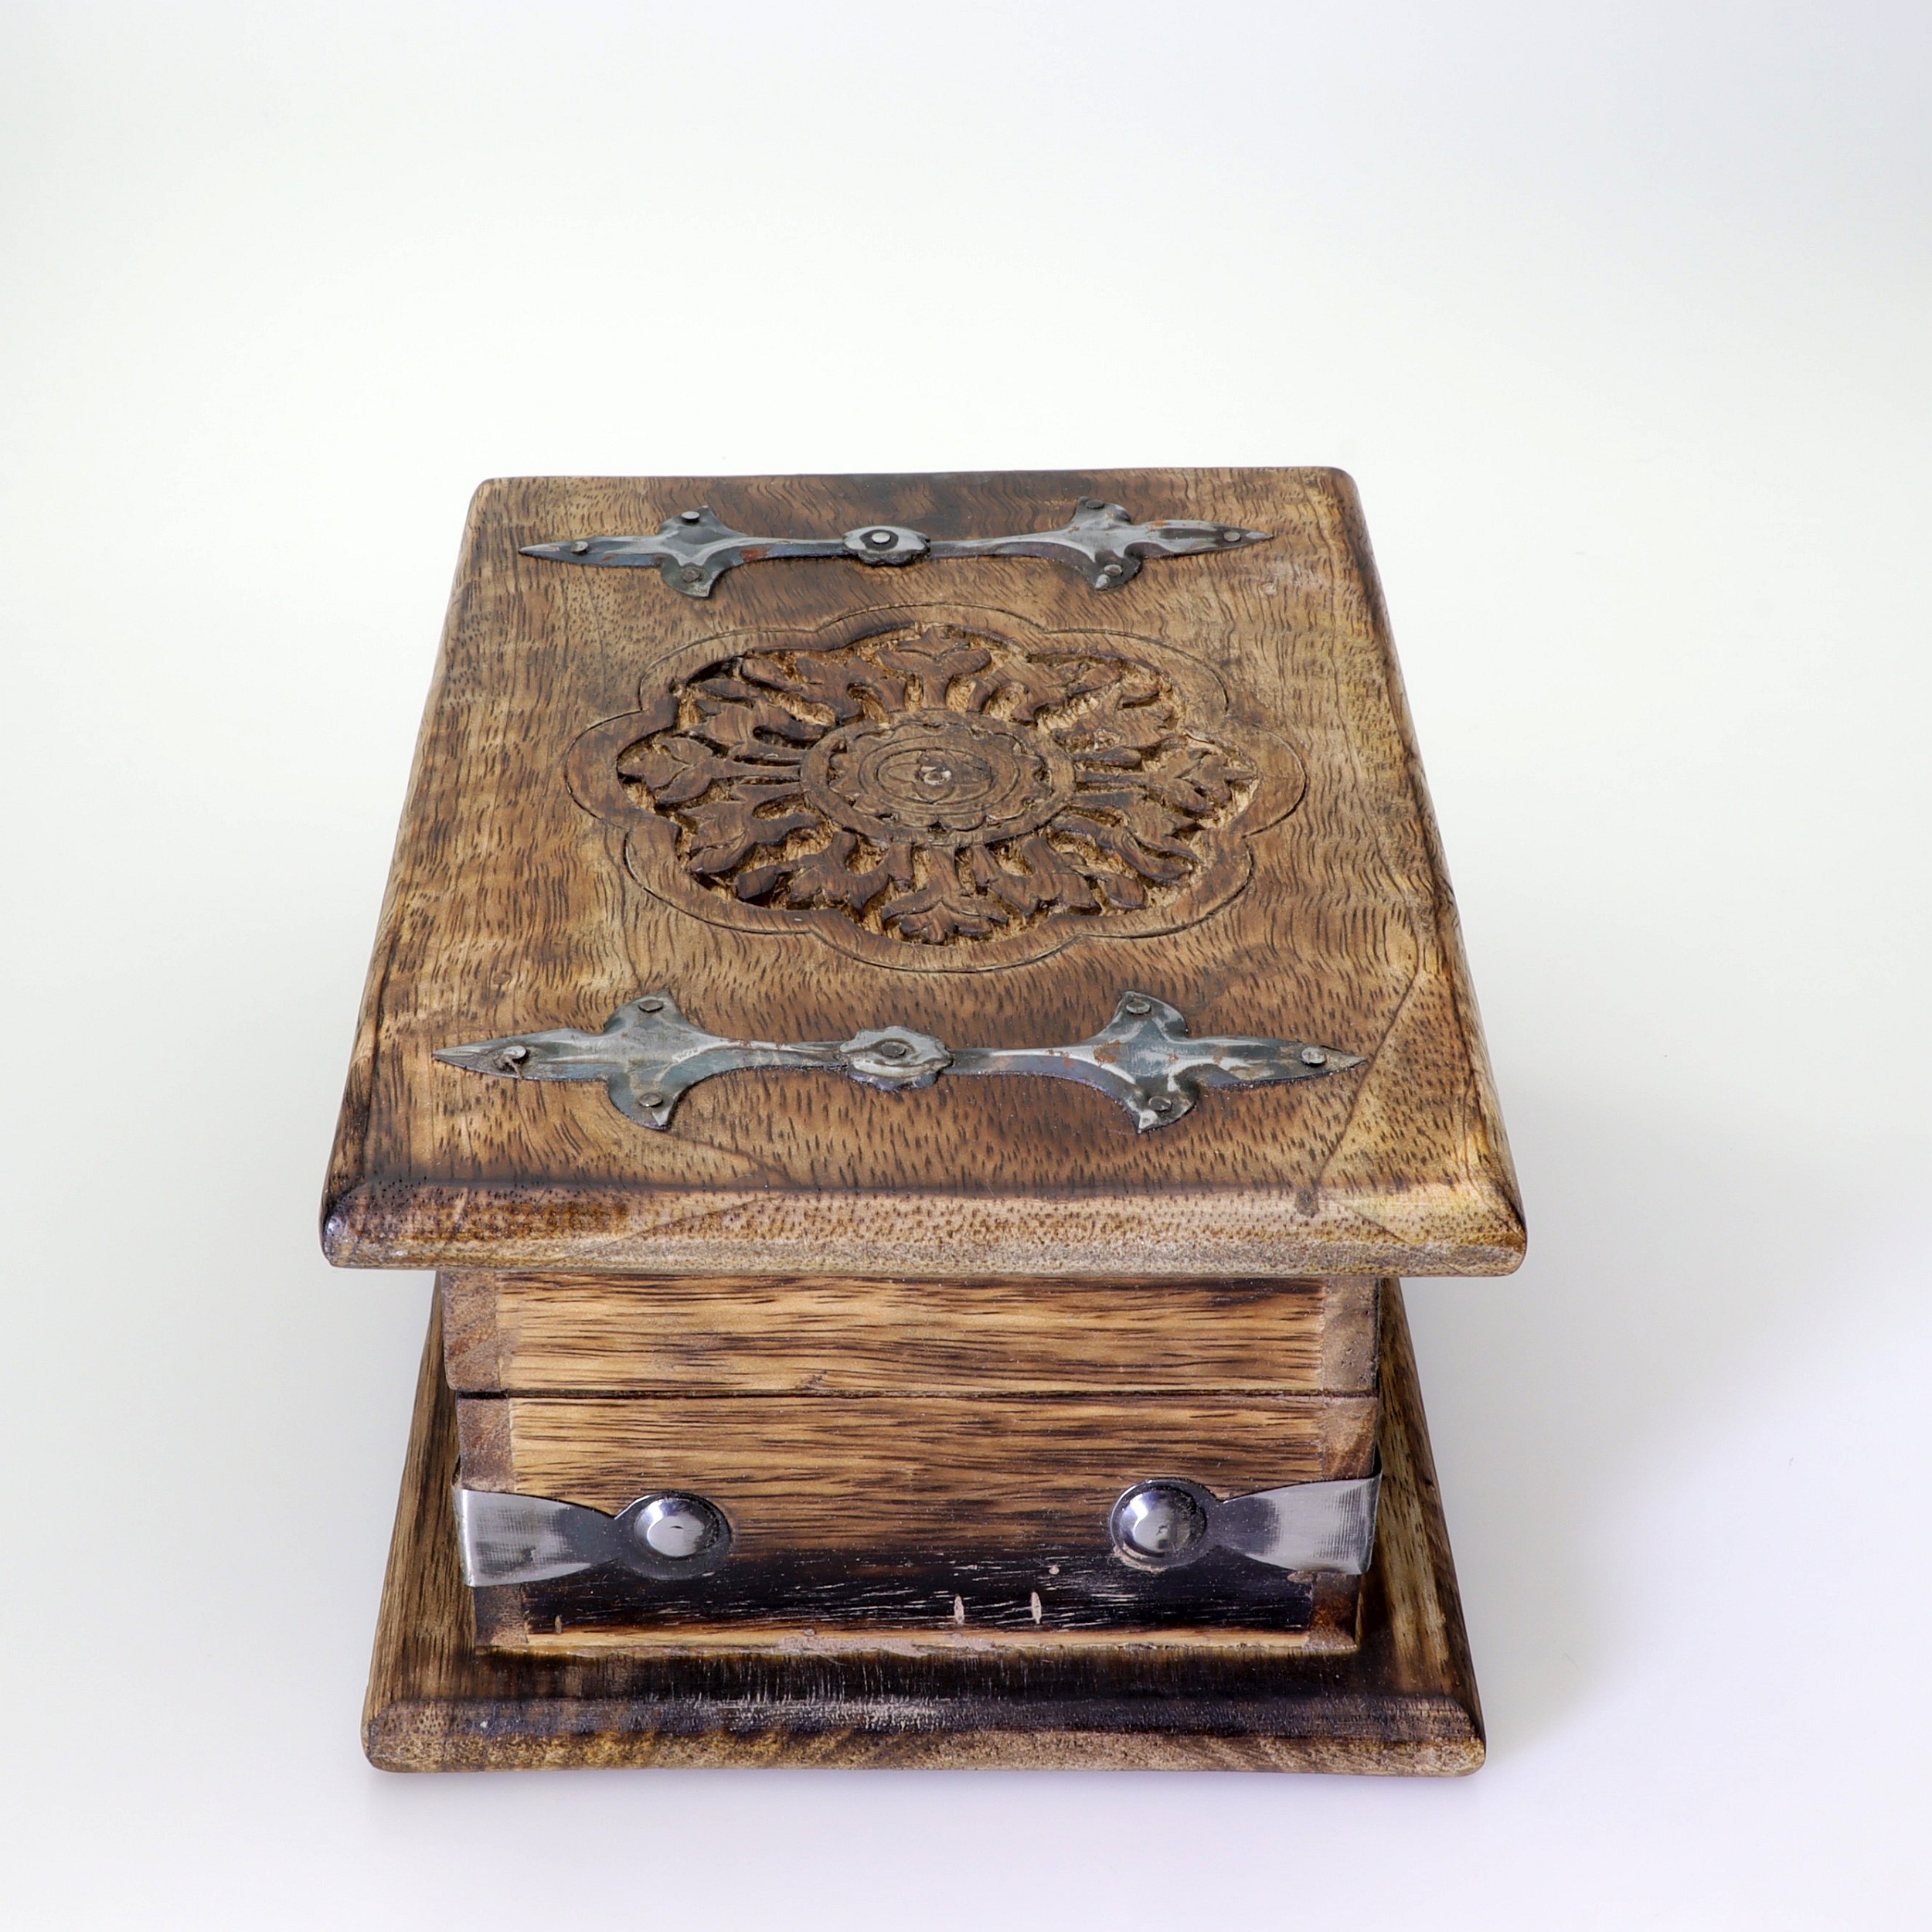 Kiste aus Holz - Lotus - Schatzkiste mit Klappdeckel und Verschluss Mechanik - Schnitzerei und Metallbeschläge - abschließbar mit Vorhängeschloss